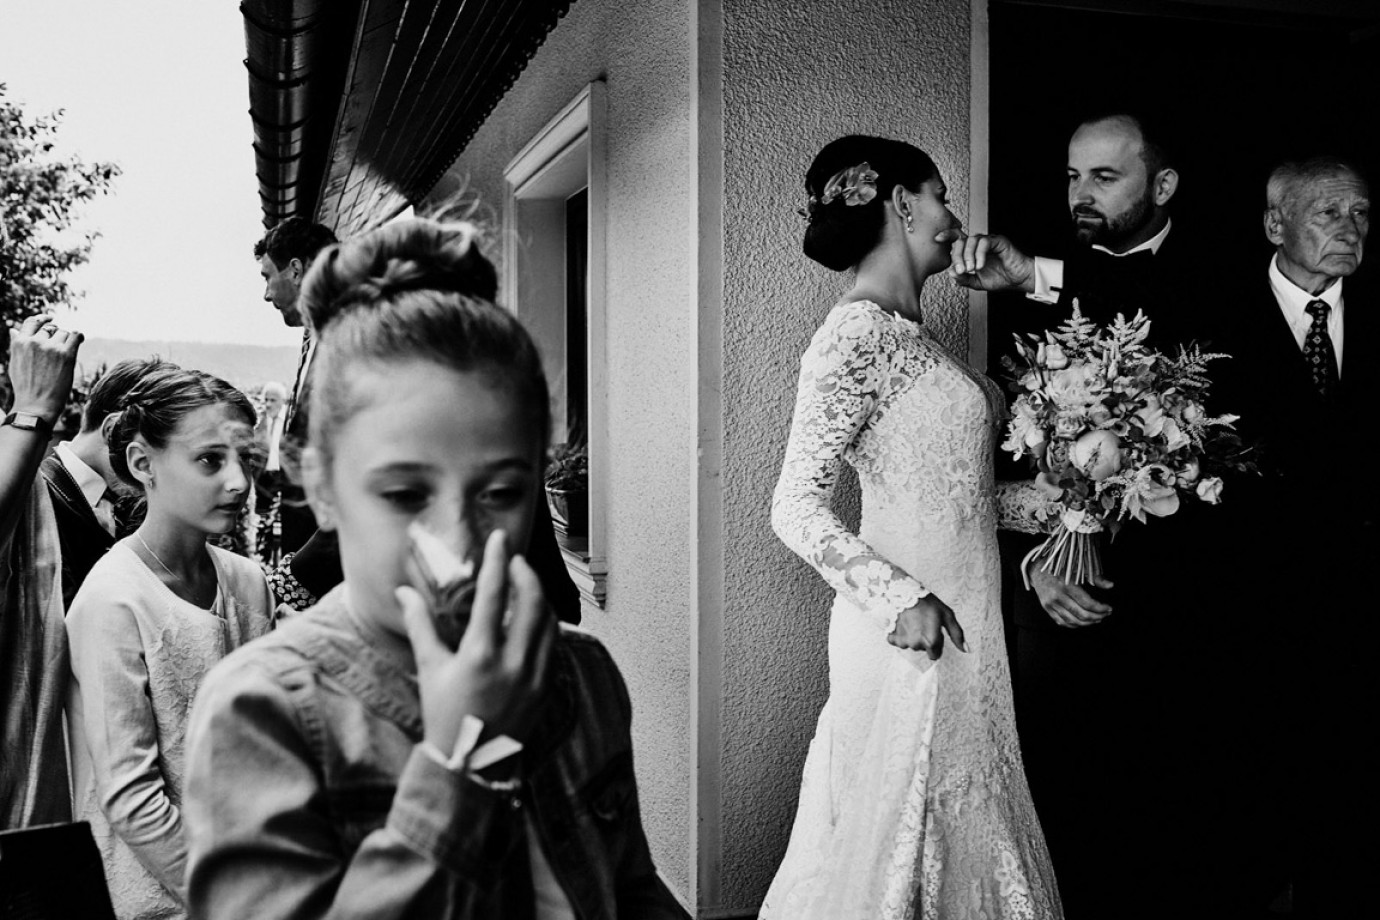 fotograf kielce lukasz-ostrowski-fotograf-slubny-krakow portfolio zdjecia slubne inspiracje wesele plener slubny sesja slubna